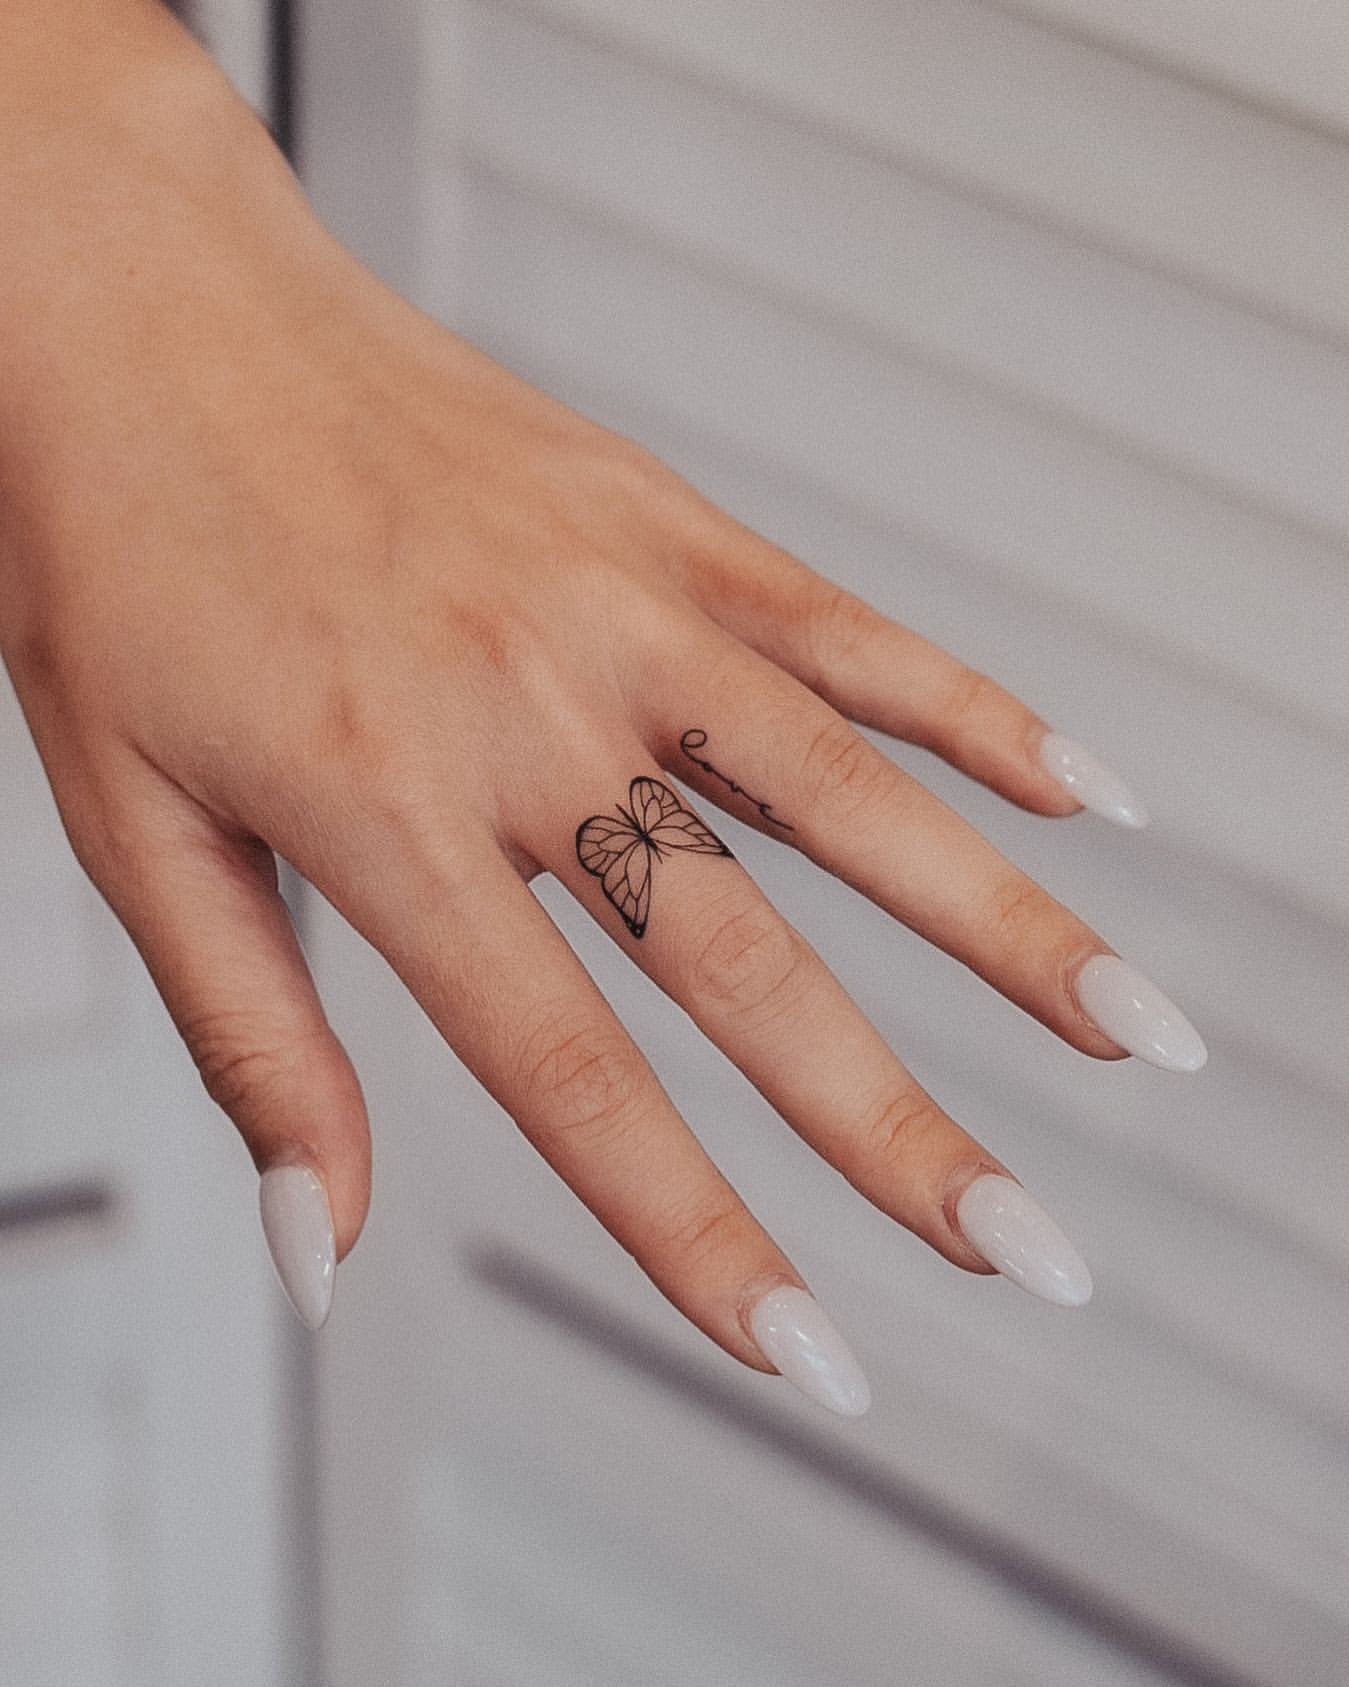 Ring Finger Tattoo Ideas 11